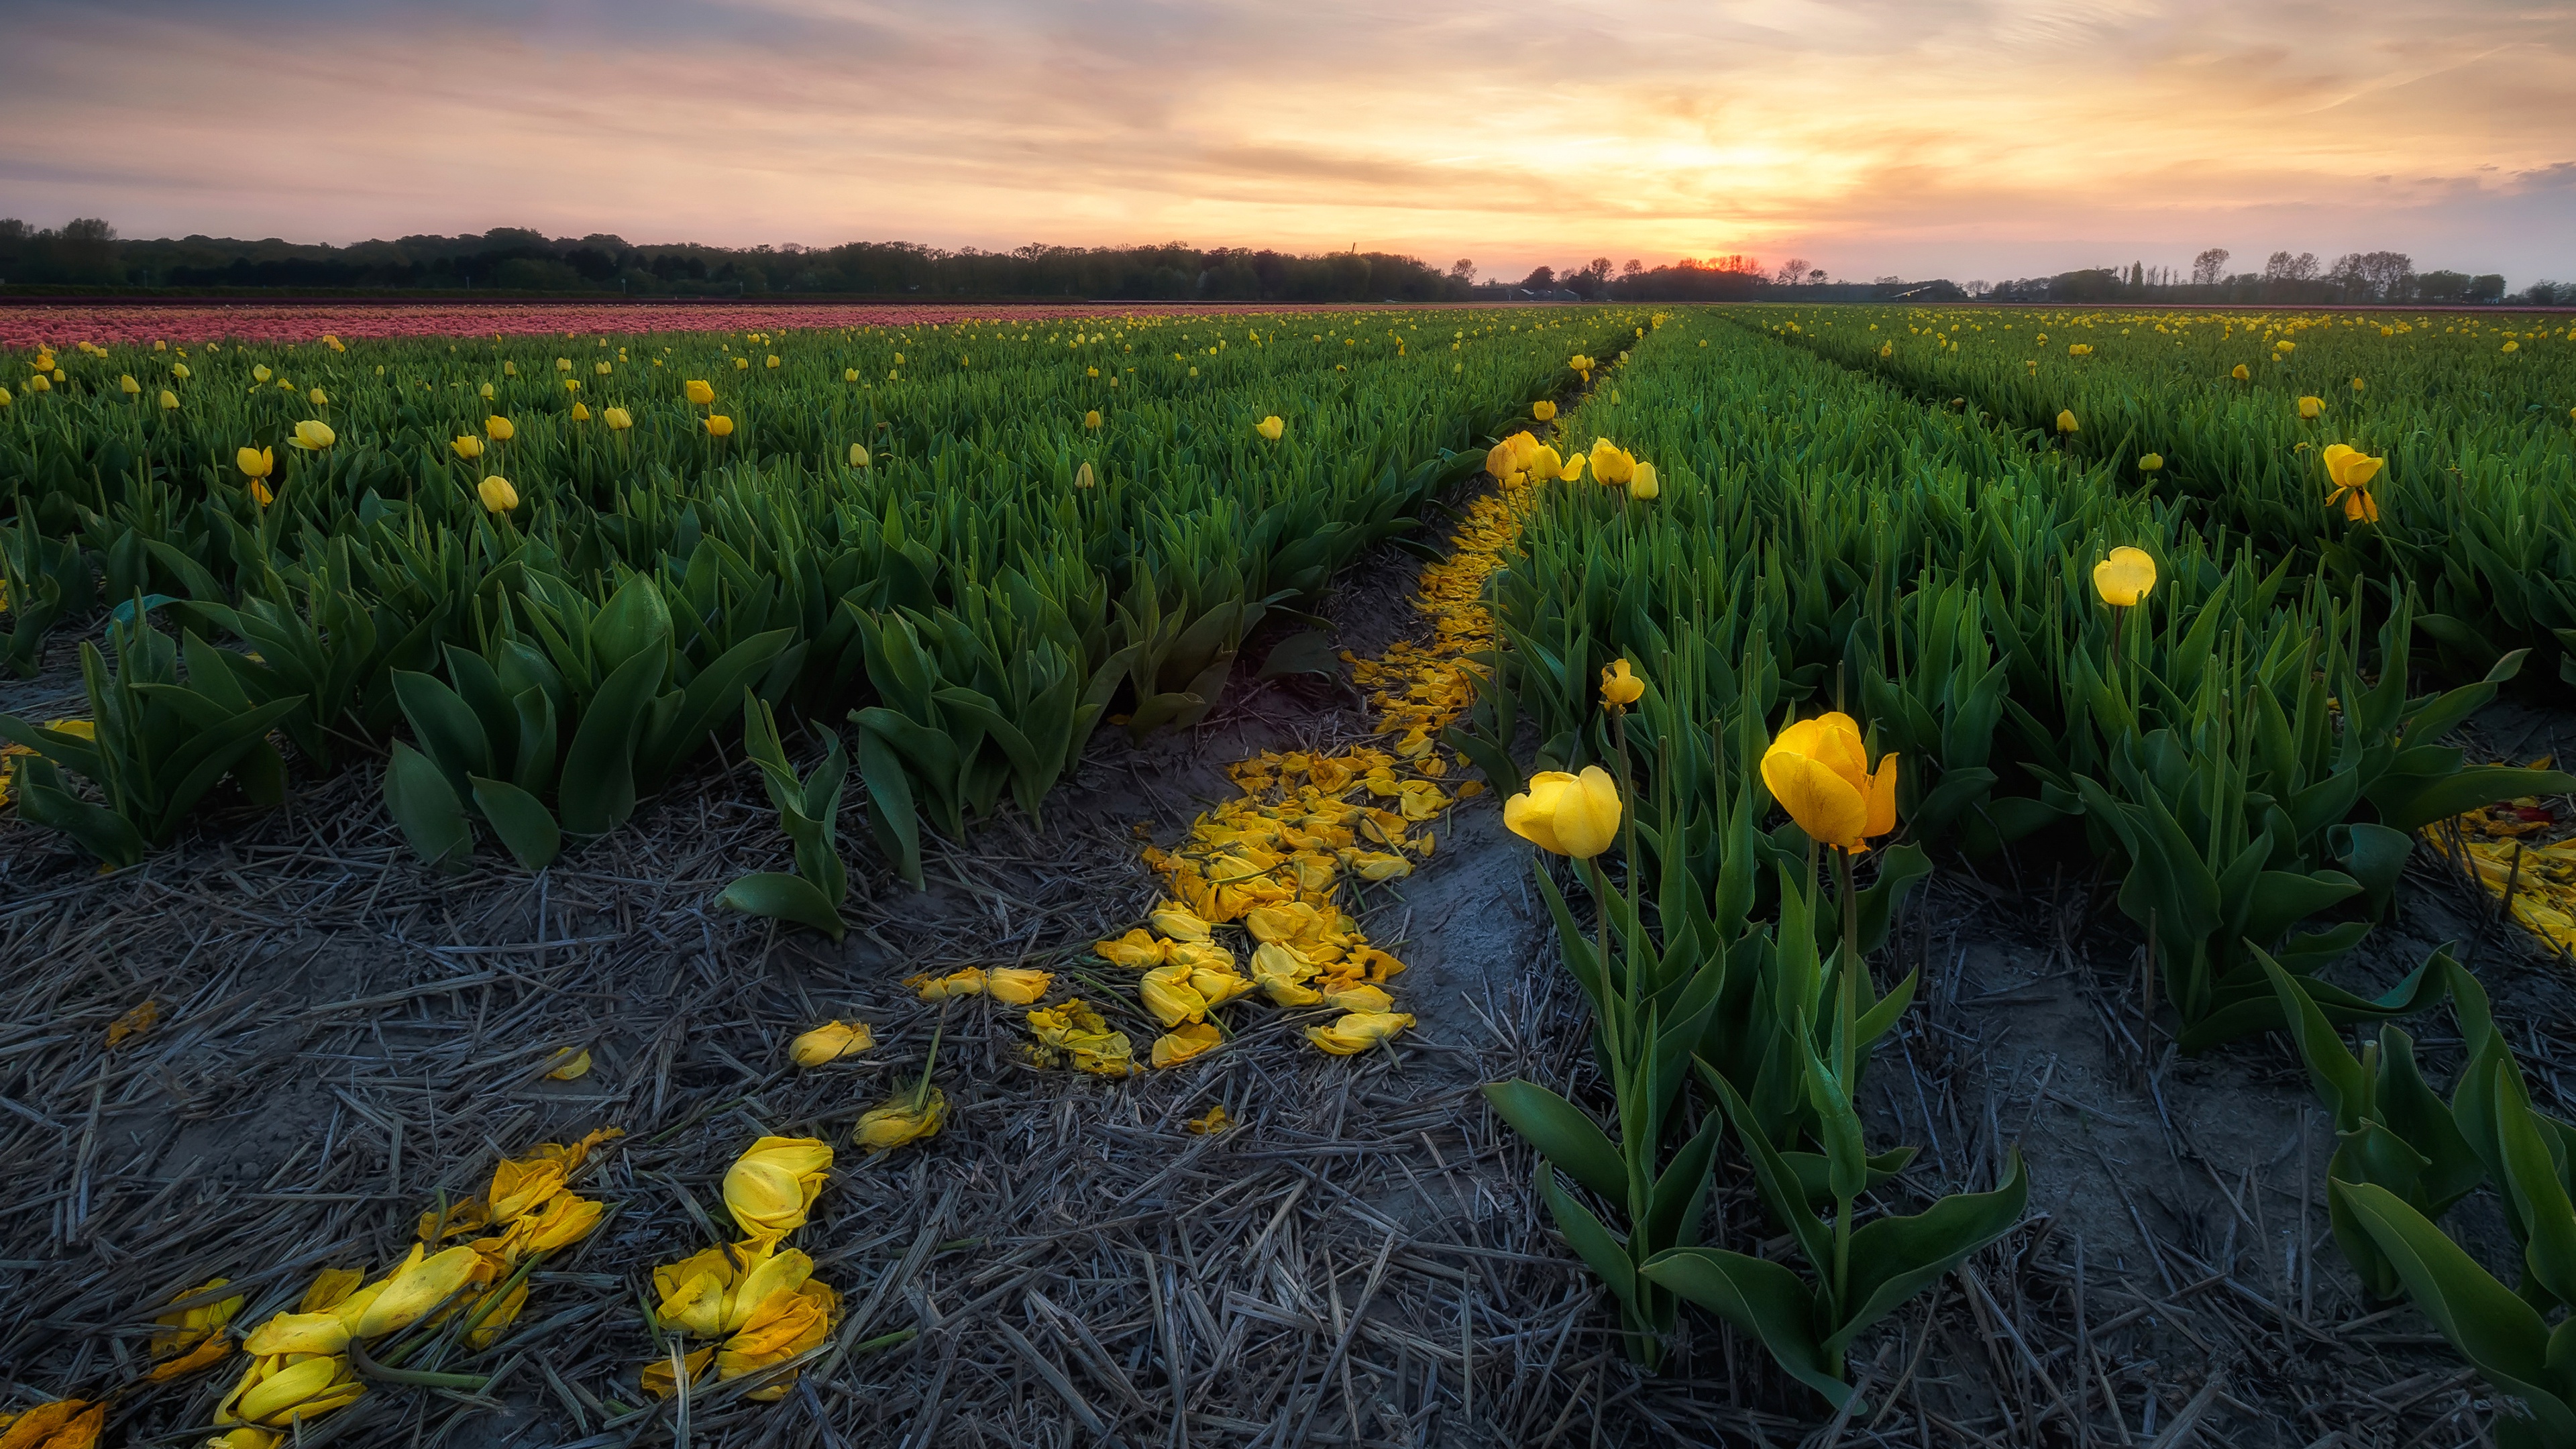 General 3840x2160 tulips flowers yellow flowers field landscape